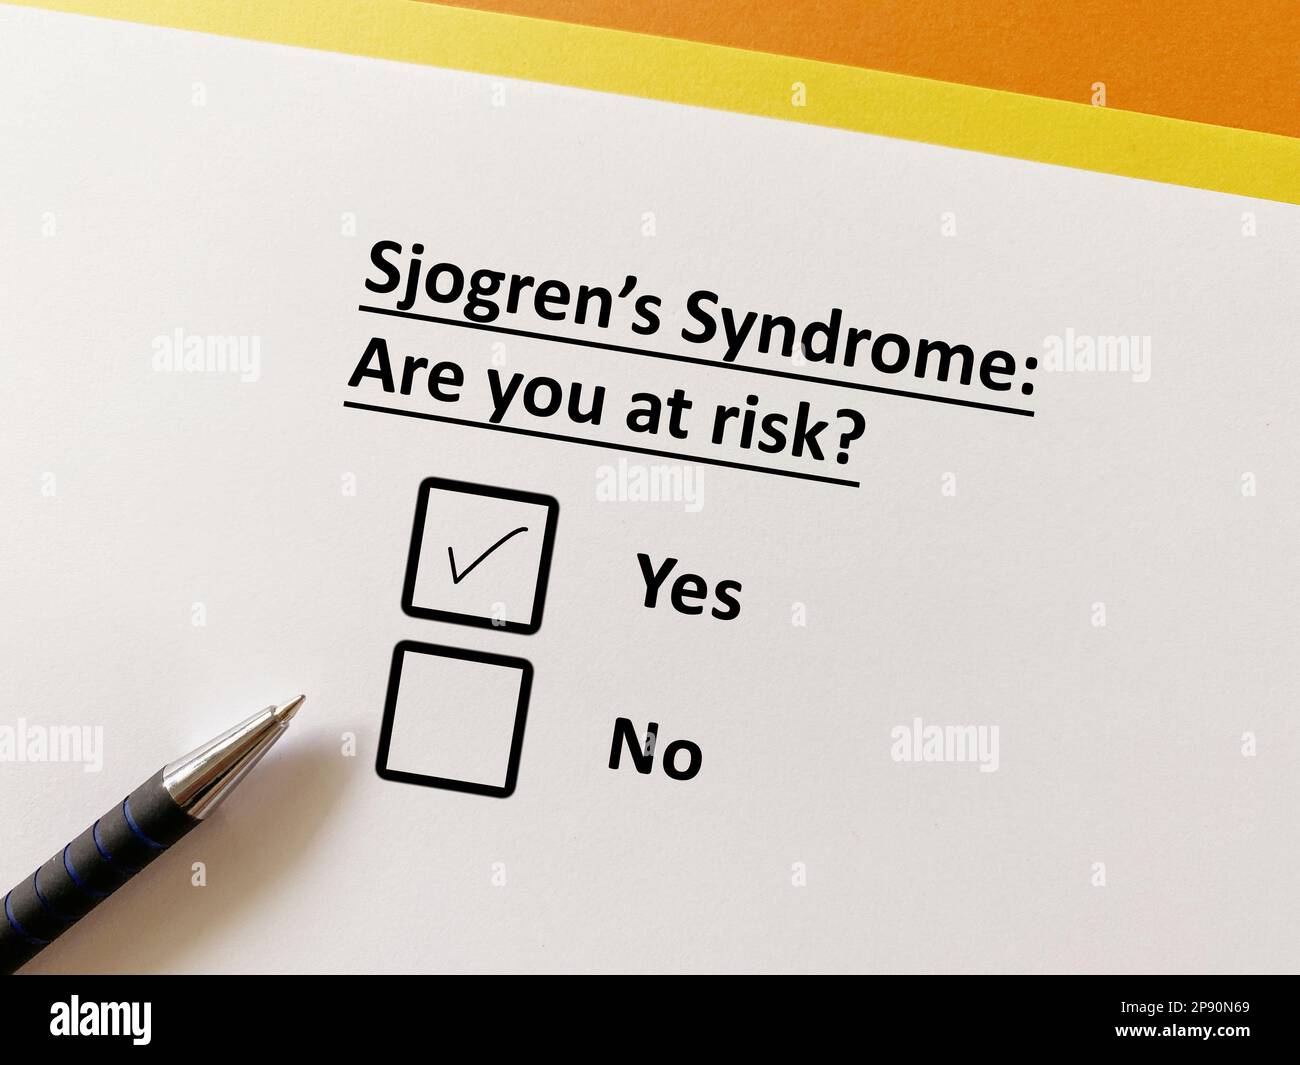 Eine Person beantwortet eine Frage über orthopädische Erkrankungen. Es besteht die Gefahr eines Sjögren-Syndroms. Stockfoto